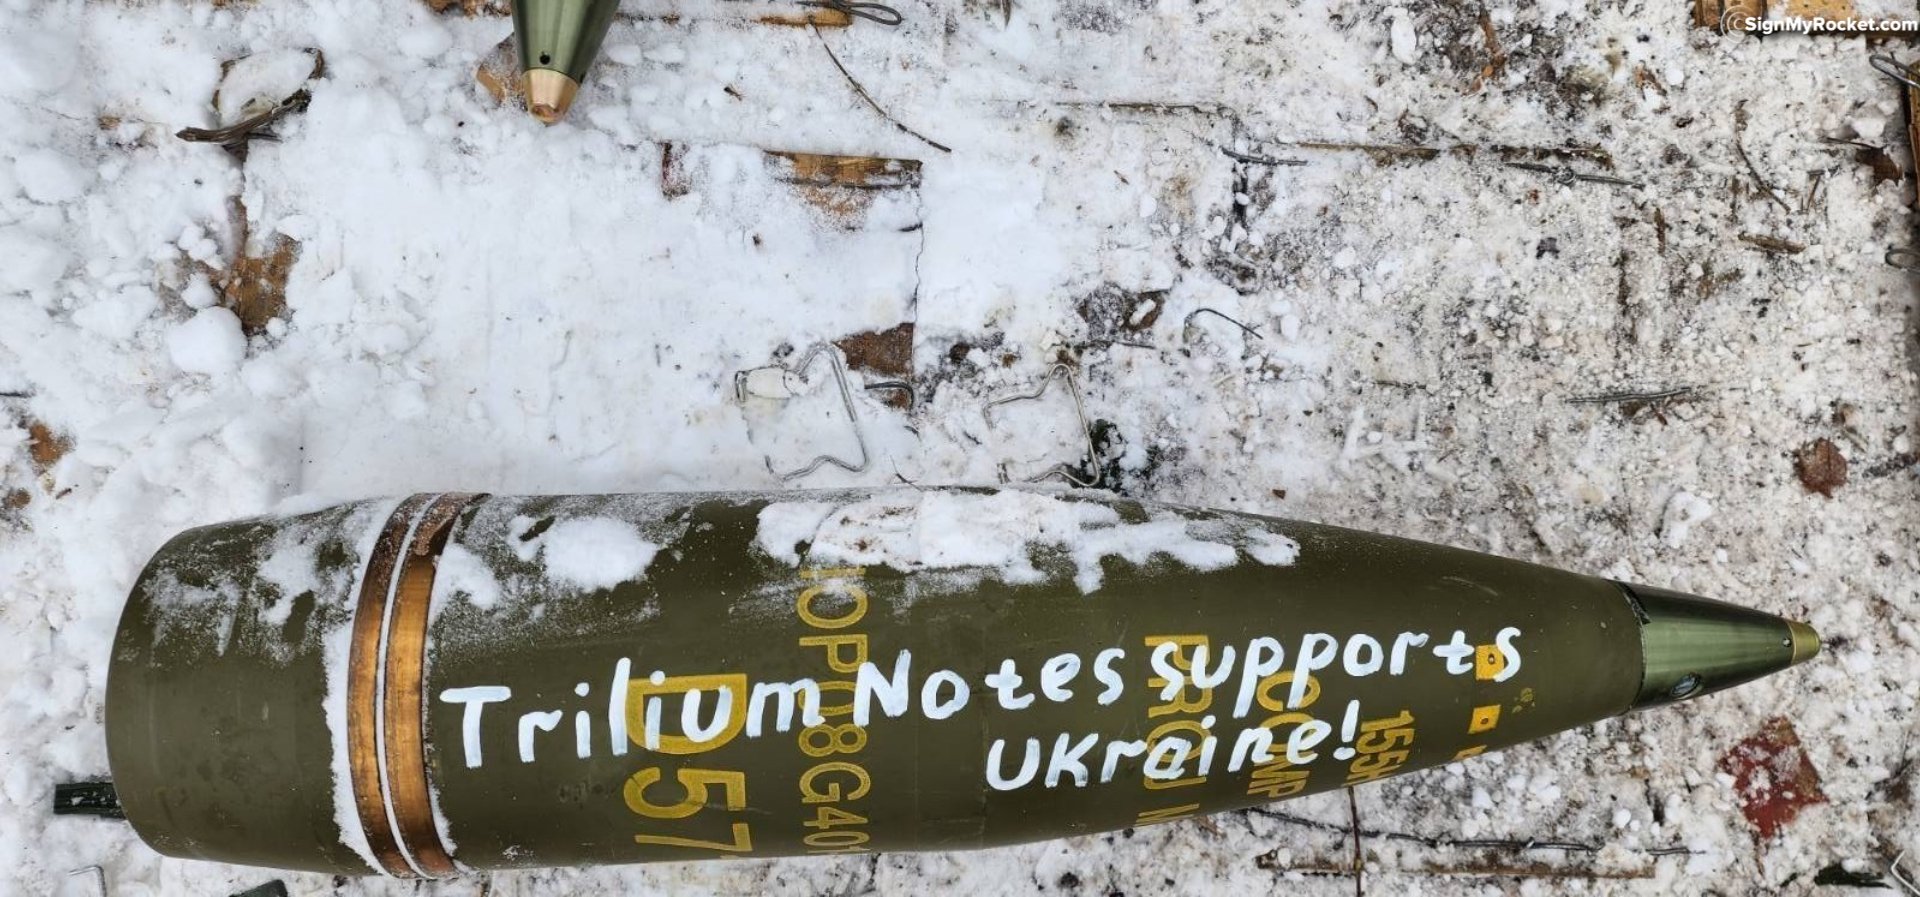 Trilium Notes supports Ukraine!